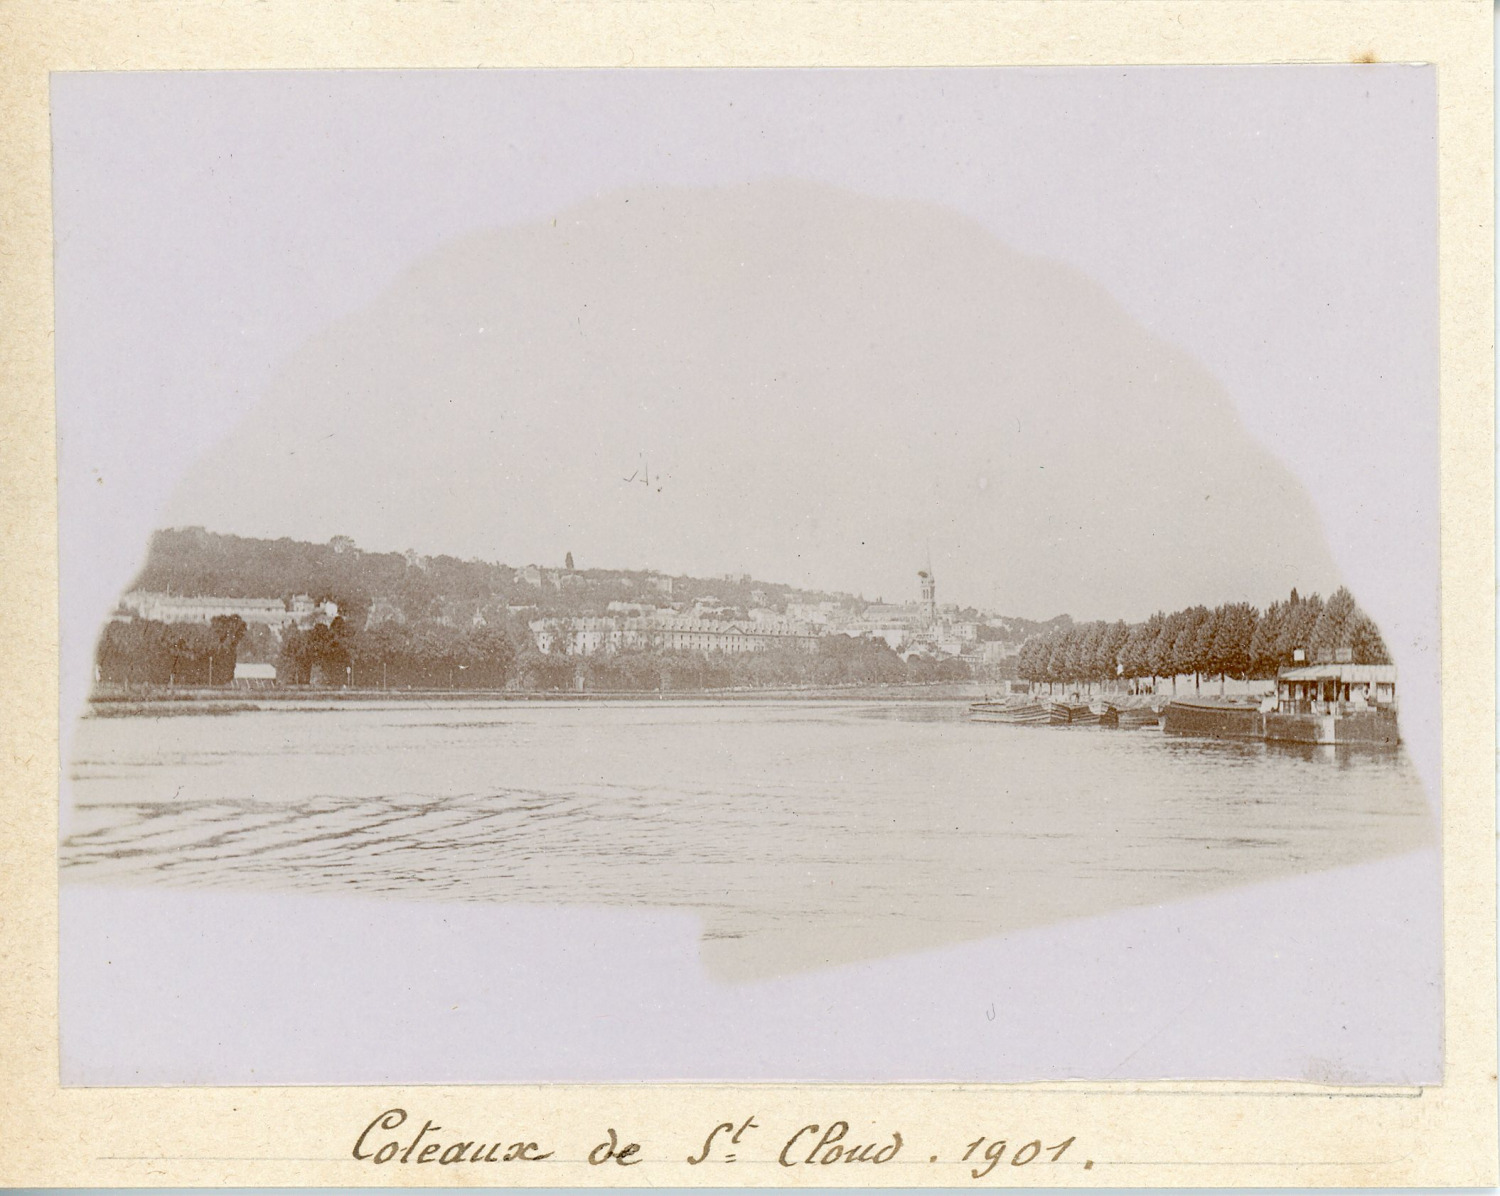 France, Coteaux de Saint-Cloud 1901, Vintage Citrate Print Vintage Citrate Print